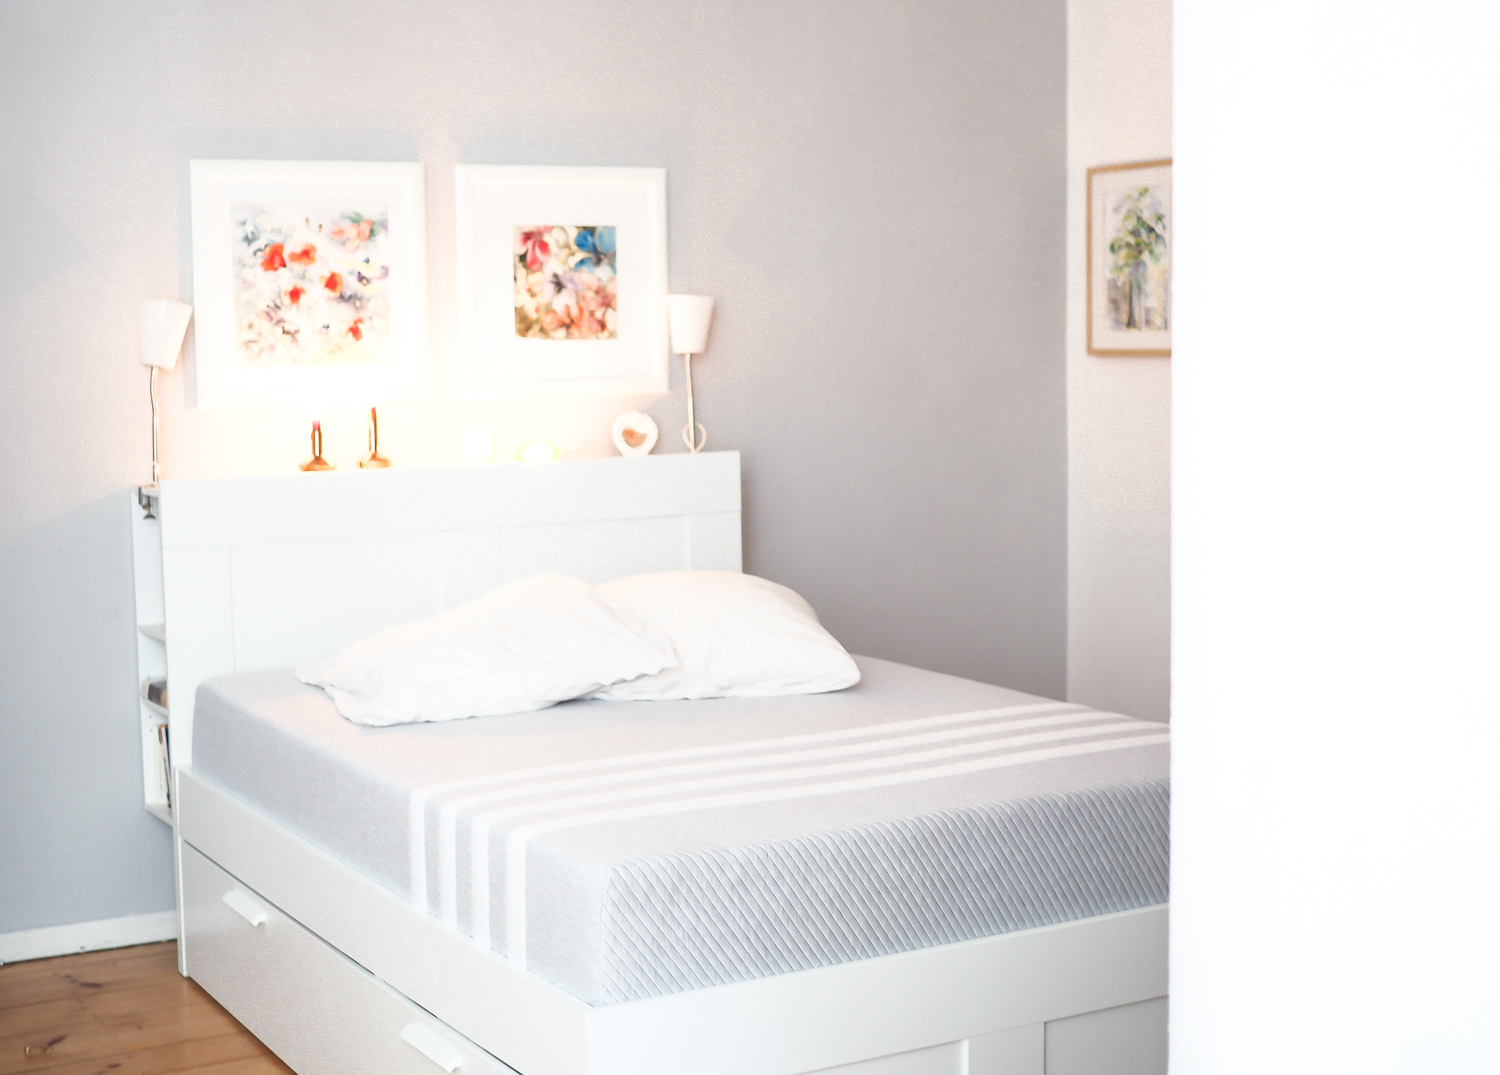 leesa matratzen review mattress erfahrungen lifestyle schlafhygiene sleeping tips blogger modeblog berlin  samieze-2